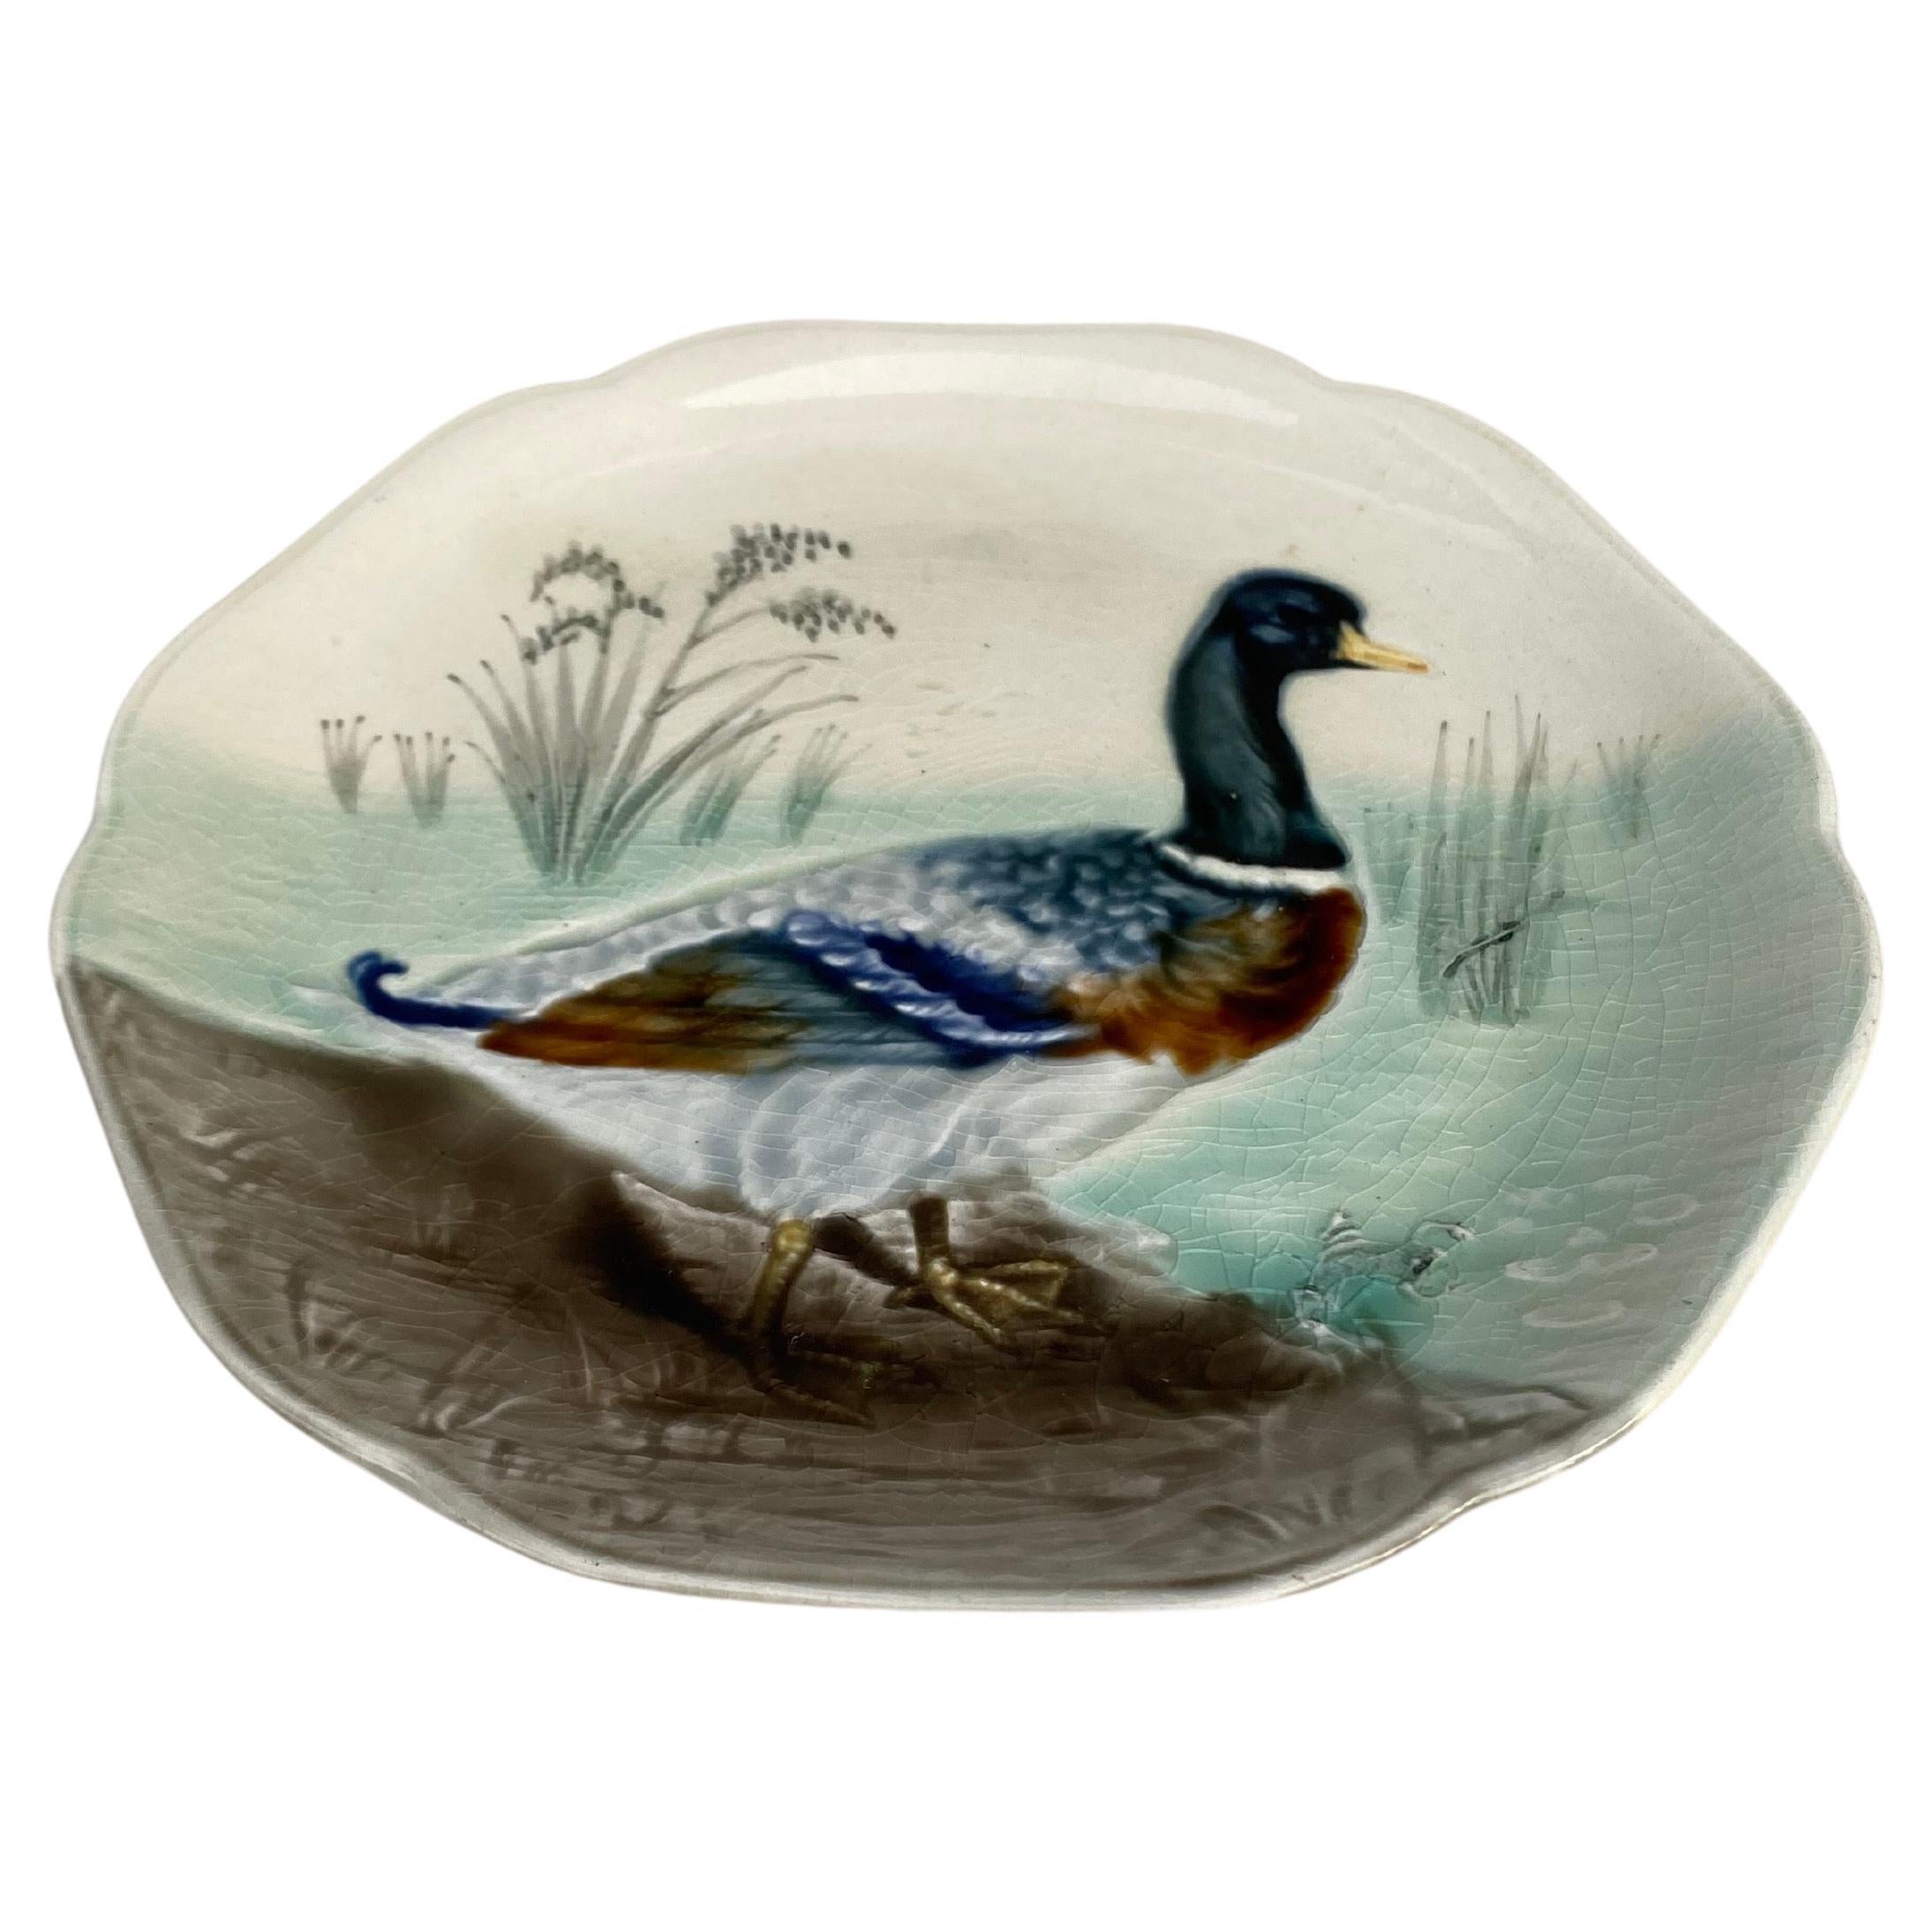 Assiette en faïence du XIXe siècle représentant un canard colvert Hippolyte Boulenger Choisy-le-Roi, vers 1890.
La manufacture de Choisy-le-Roi était l'une des plus importantes à la fin du 19ème siècle, elle produisait des céramiques de très haute